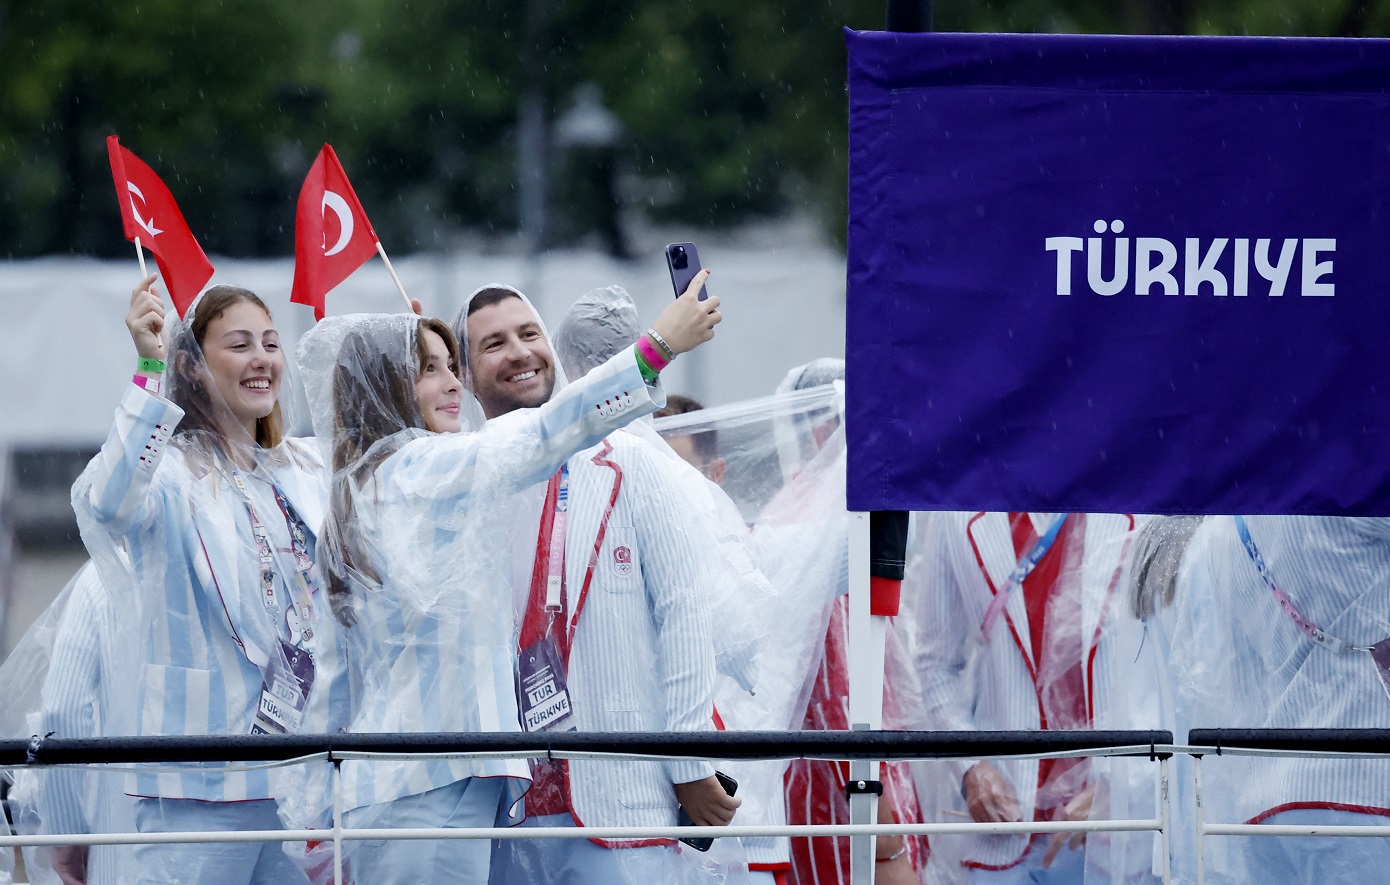 Τουρκική κατακραυγή για την επίσημη ενδυμασία των αθλητών στην τελετή έναρξης: «Είναι σαν ελληνικές πιτζάμες»